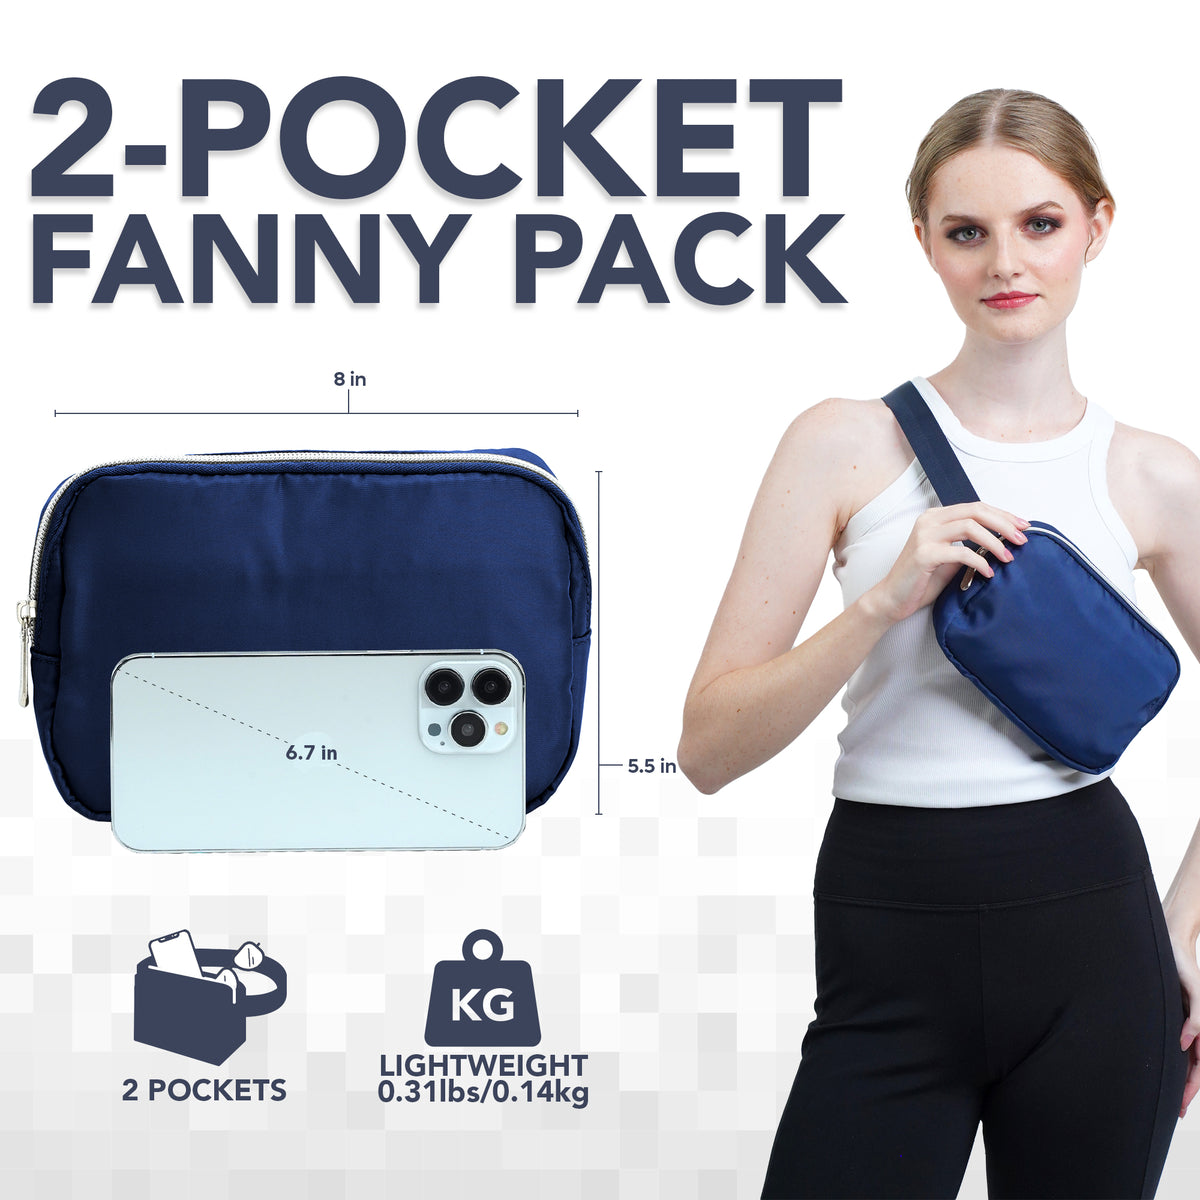 Navy Blue Fanny Pack Belt Bag for Women I Cross Body Fanny Packs for Women - Crossbody Bags small Waist Bag Men